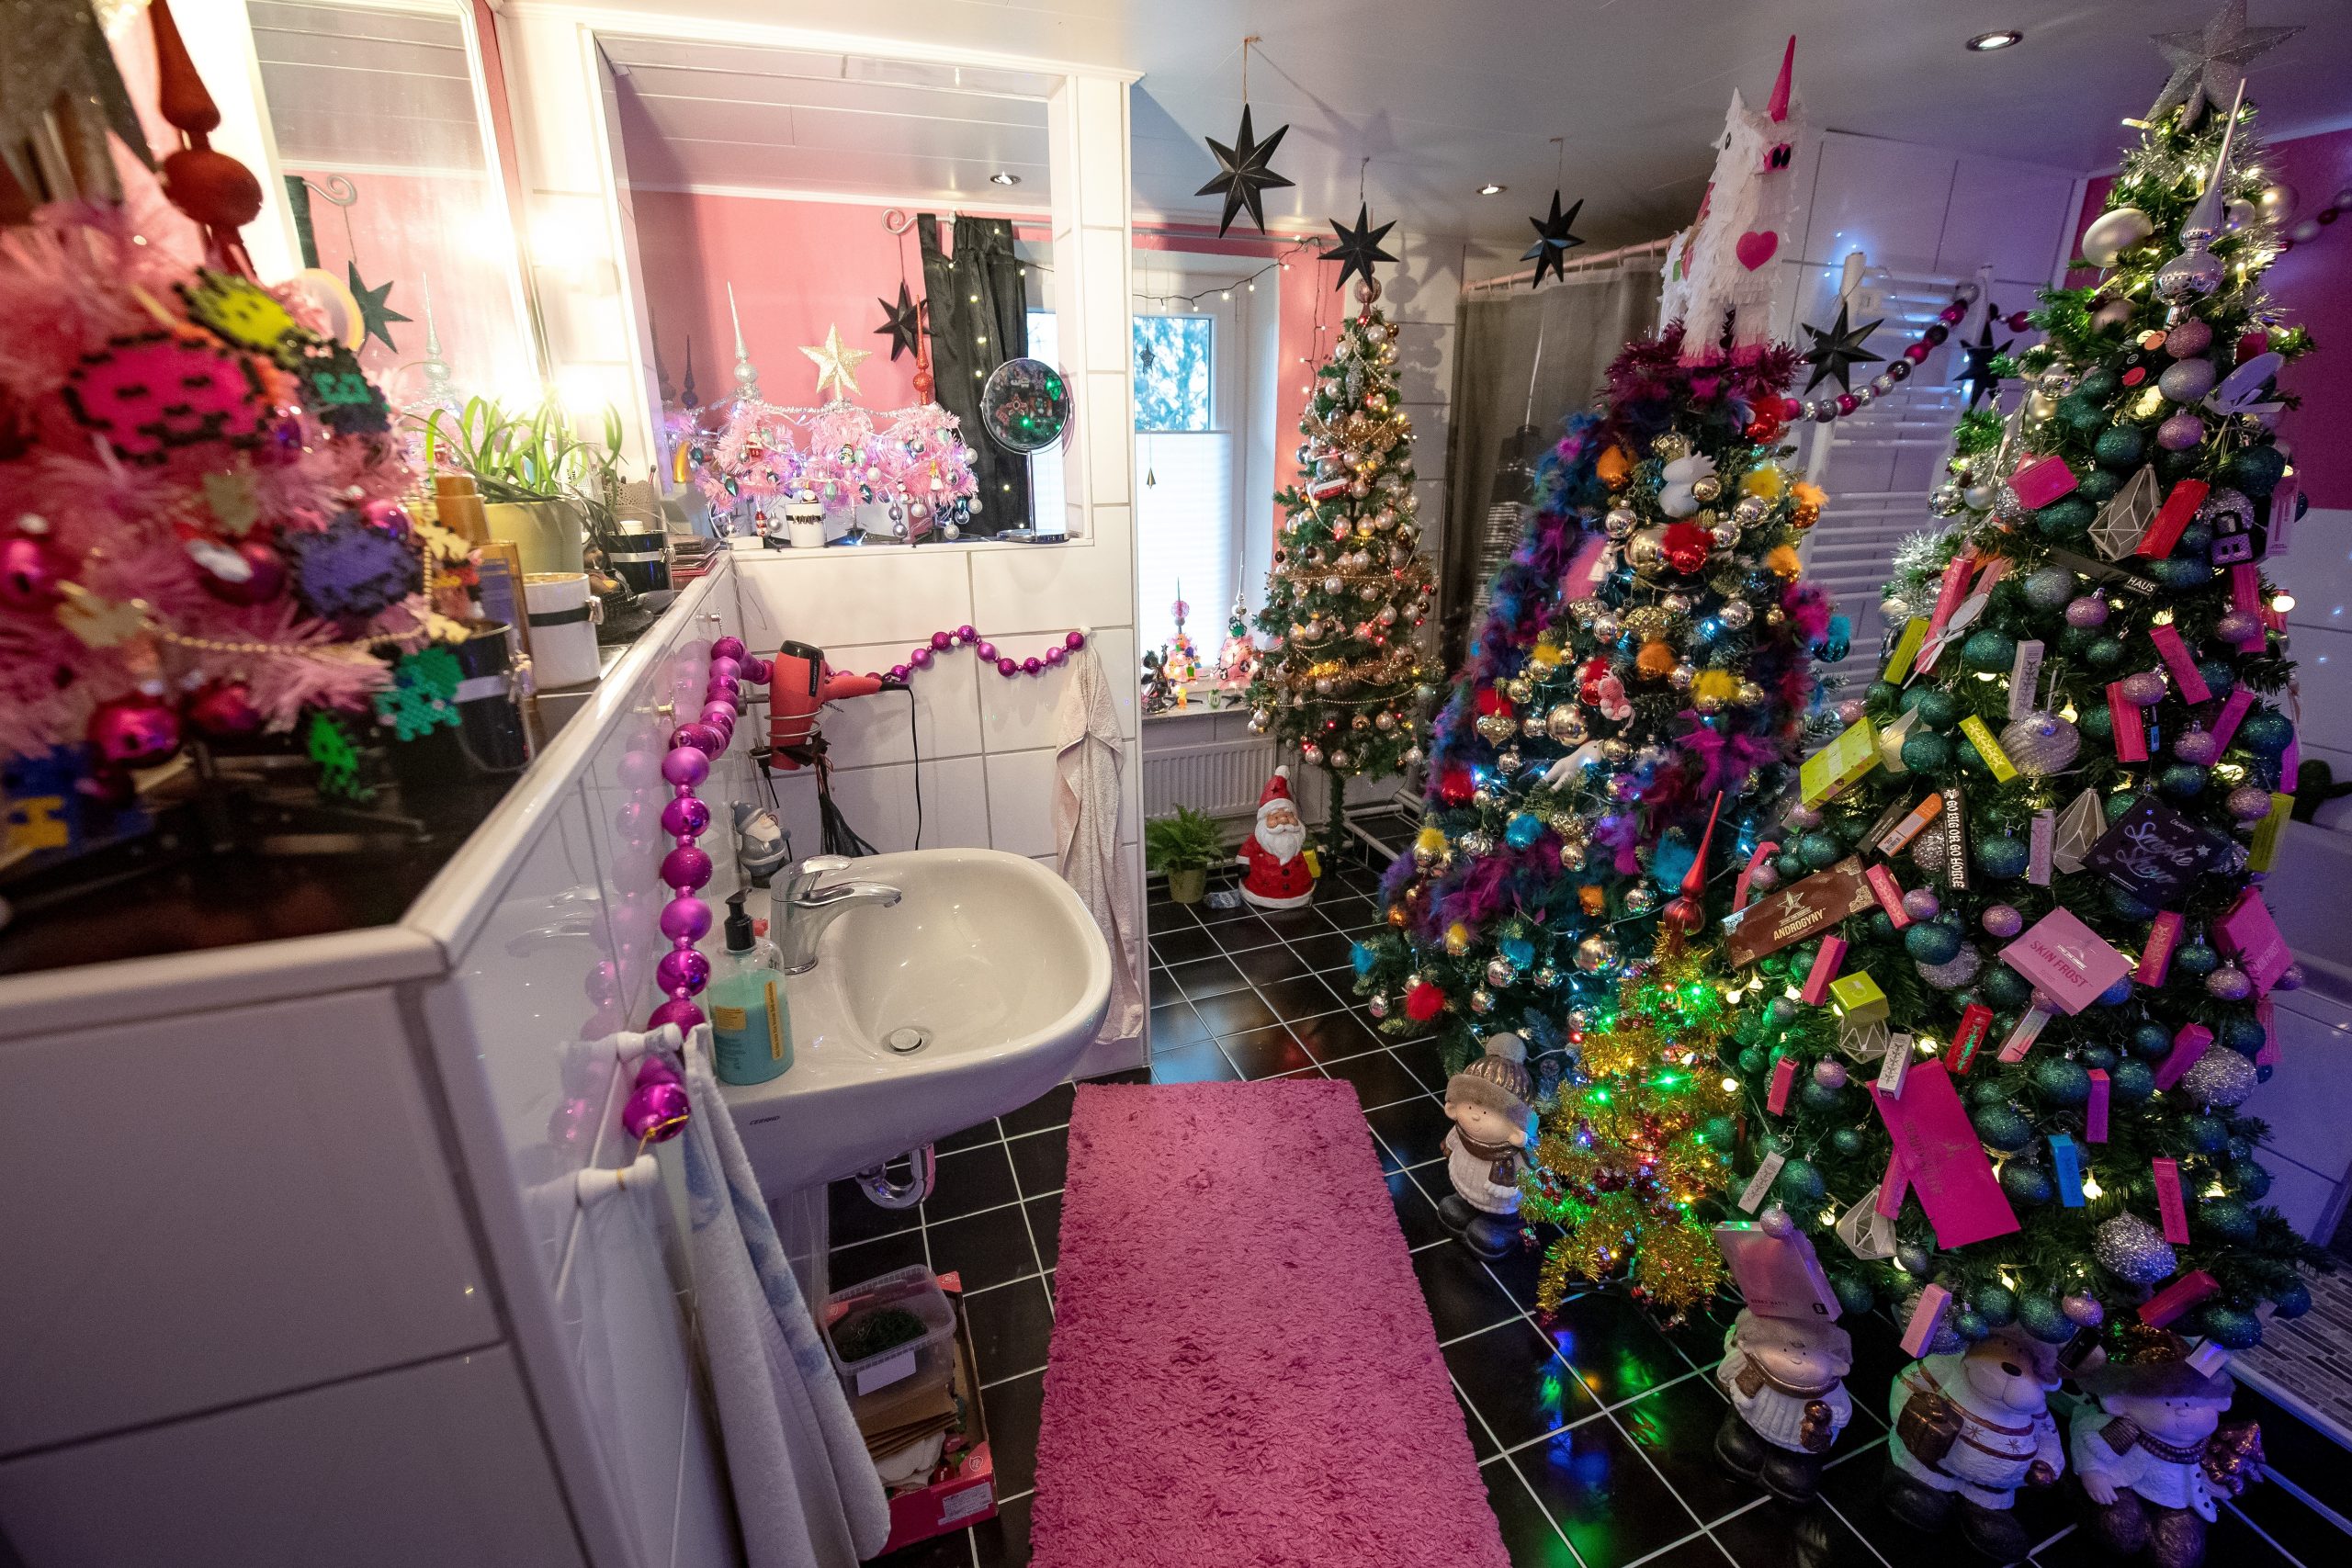 Sogar im Badezimmer finden Weihnachtsbäume und -deko ihren Platz.